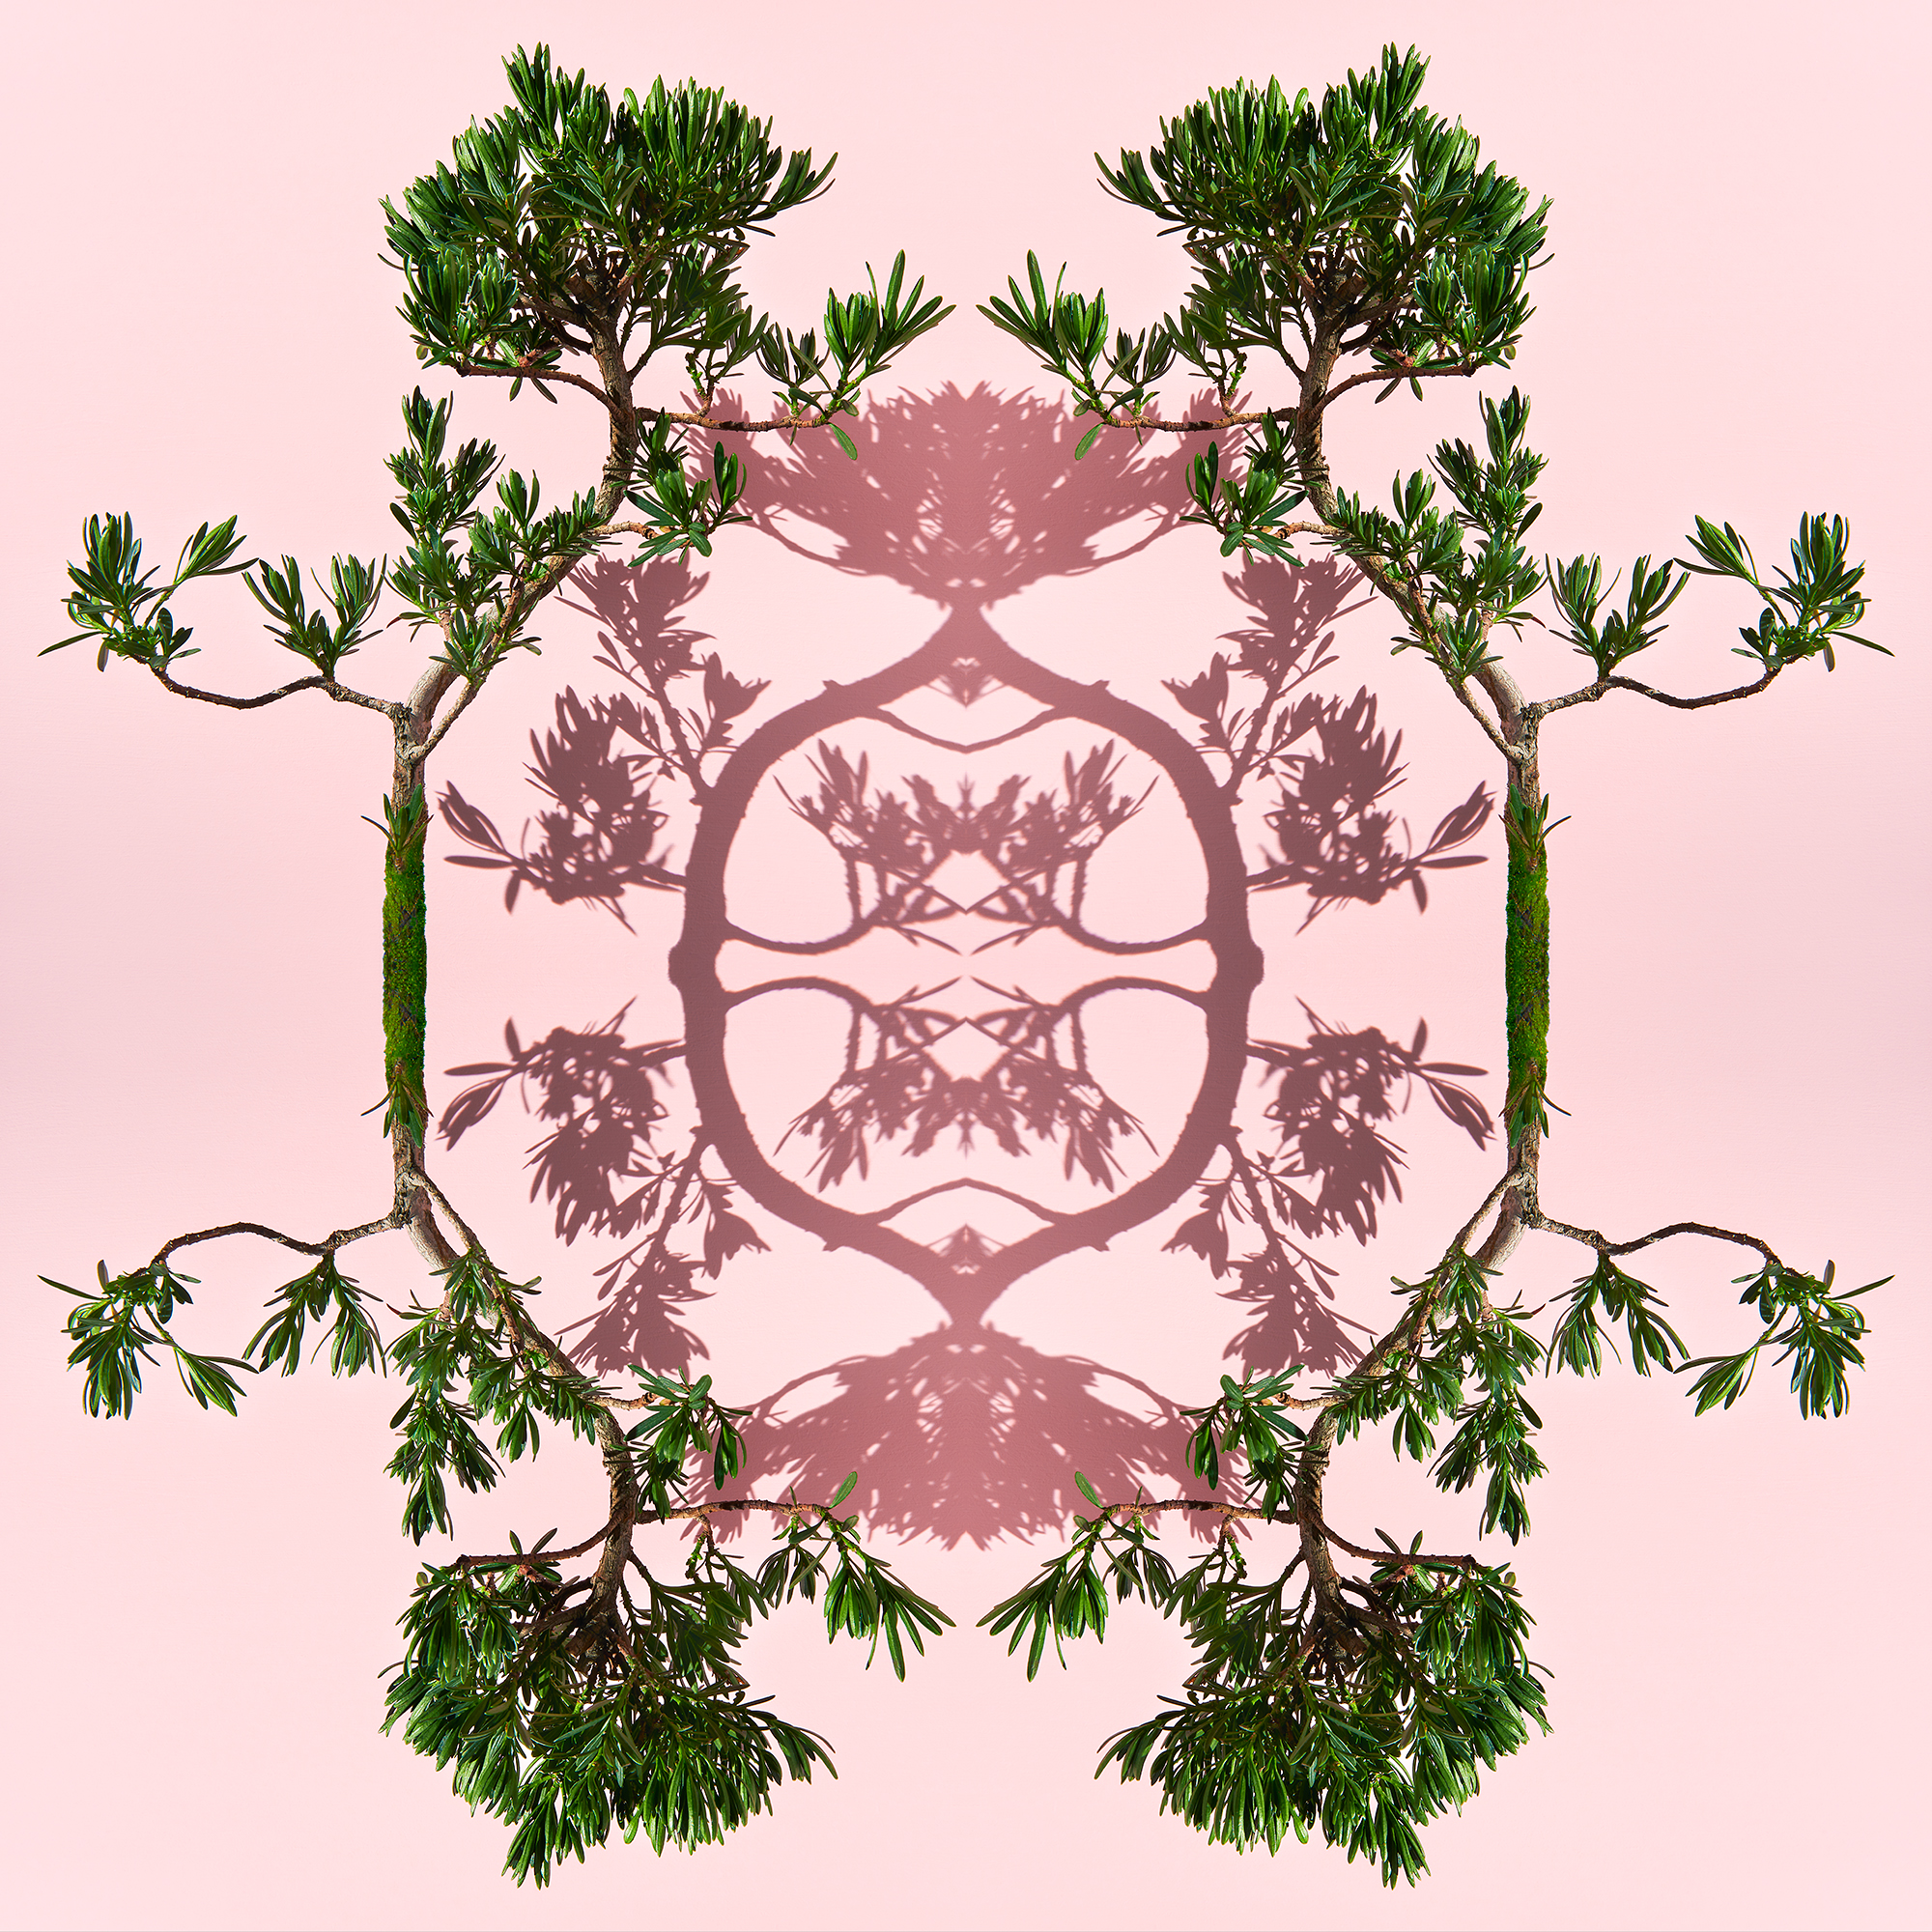 <a href="https://mrsteel.london/shop/bonsai-on-pink-ii/">REVEAL DETAILS / BUY</a> 